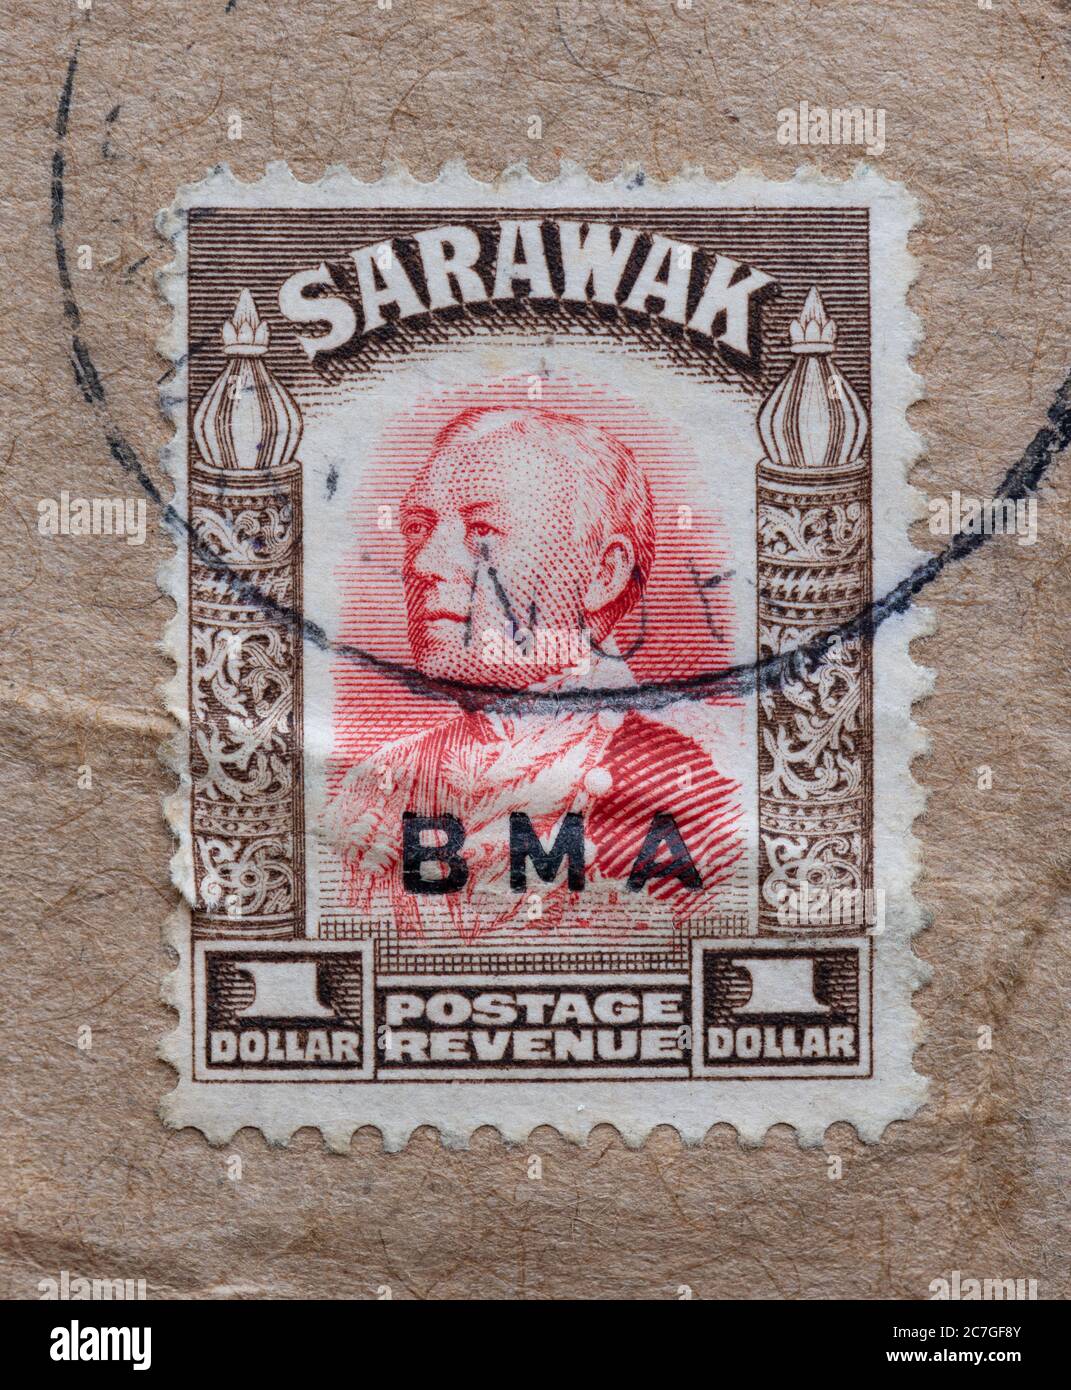 Sarawak (Malasia, Borneo) sello postal con sobreimpresión BMA mostrando a Sir Charles Vyner de Windt Brooke el último rajah de Sarawak Foto de stock